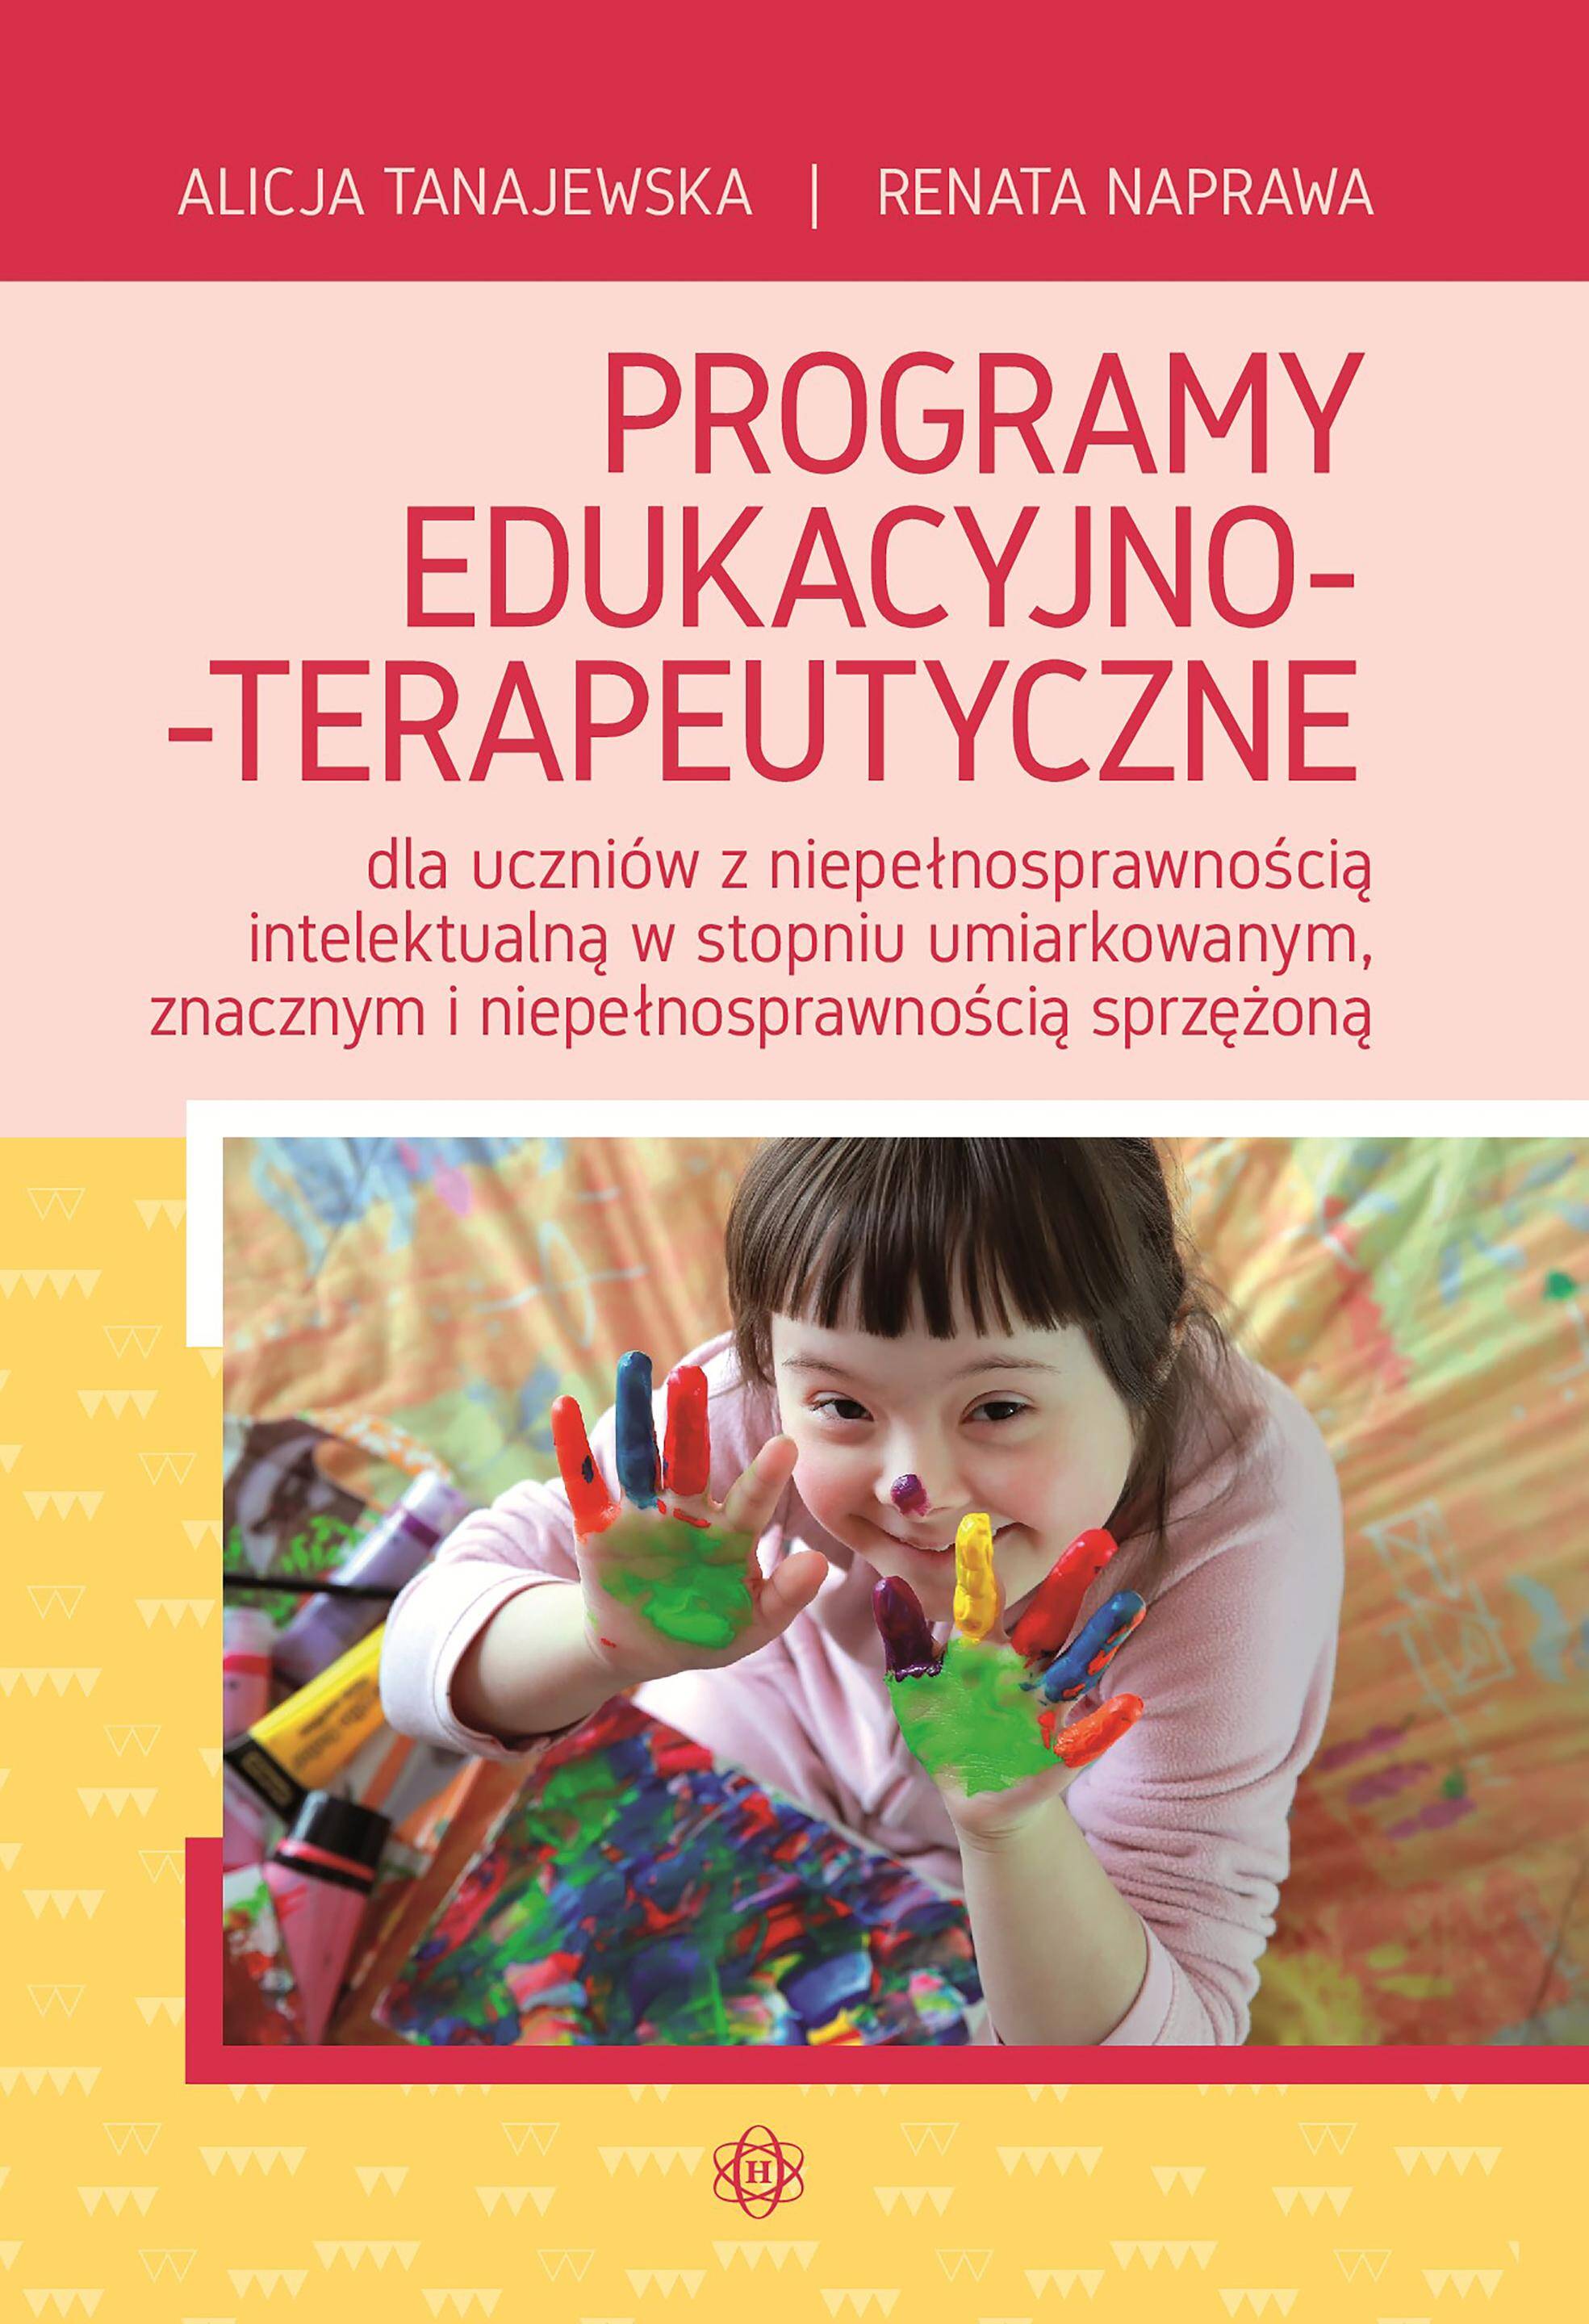 Programy edukacyjno-terapeutyczne dla uczniów z niepełnosprawnością intelektualną w stopniu umiarkowanym znacznym i niepełnosprawnością sprzężoną